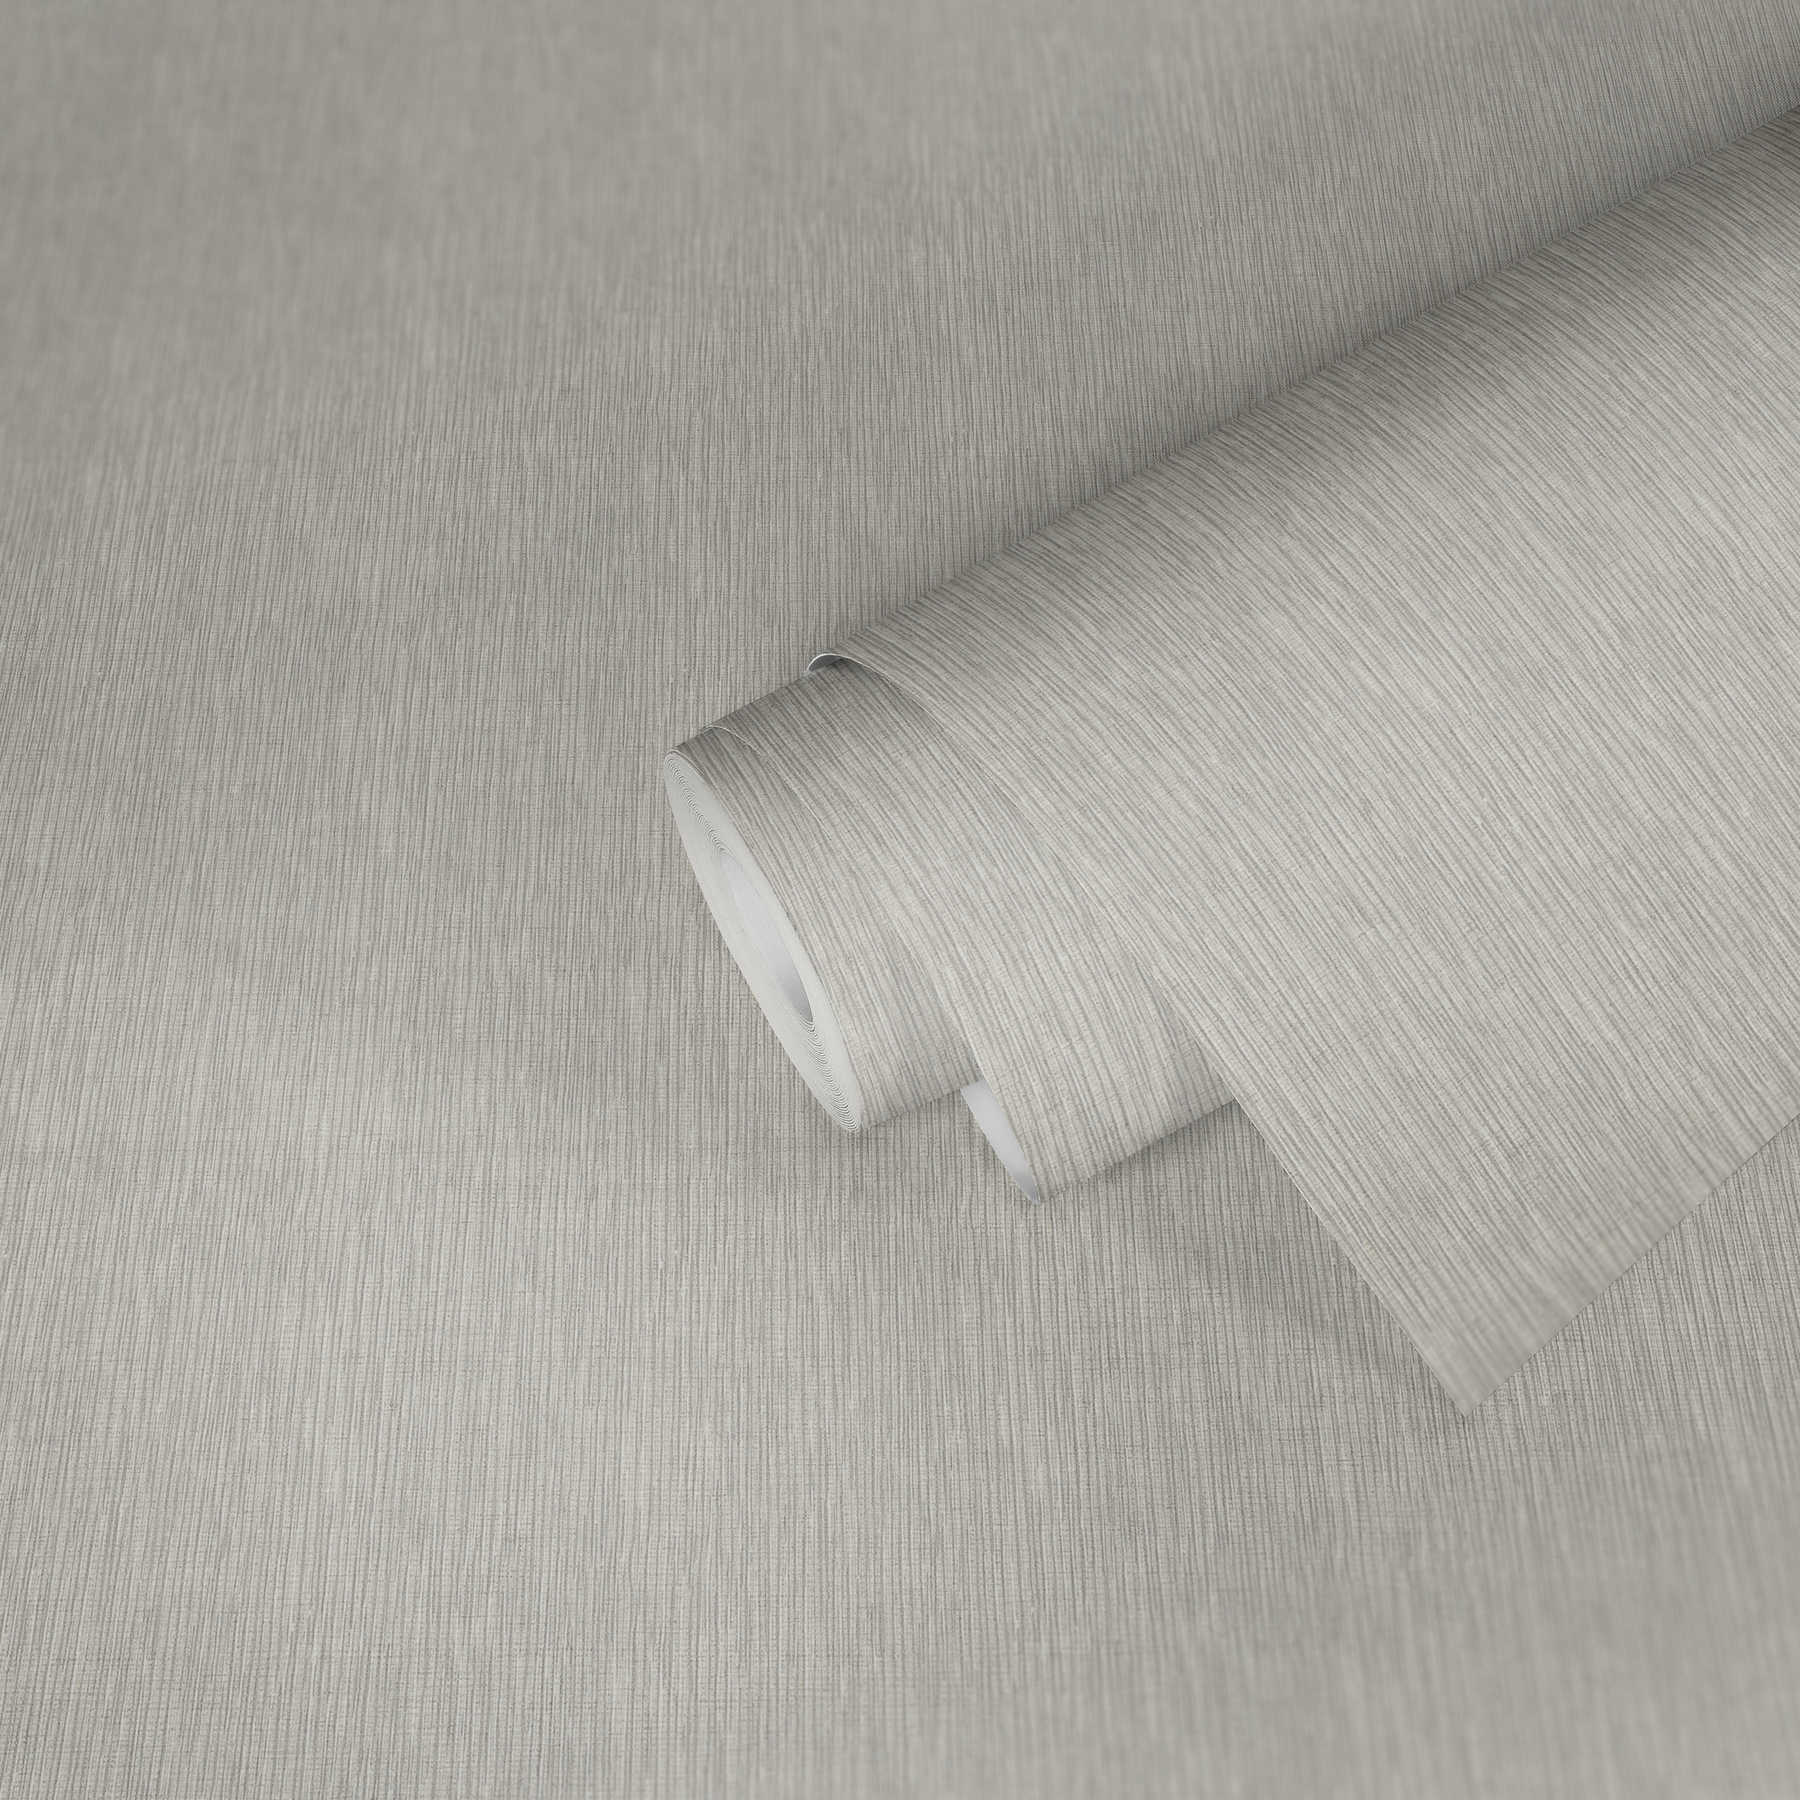             Papier peint gris avec lignes métalliques & gaufrage structuré
        